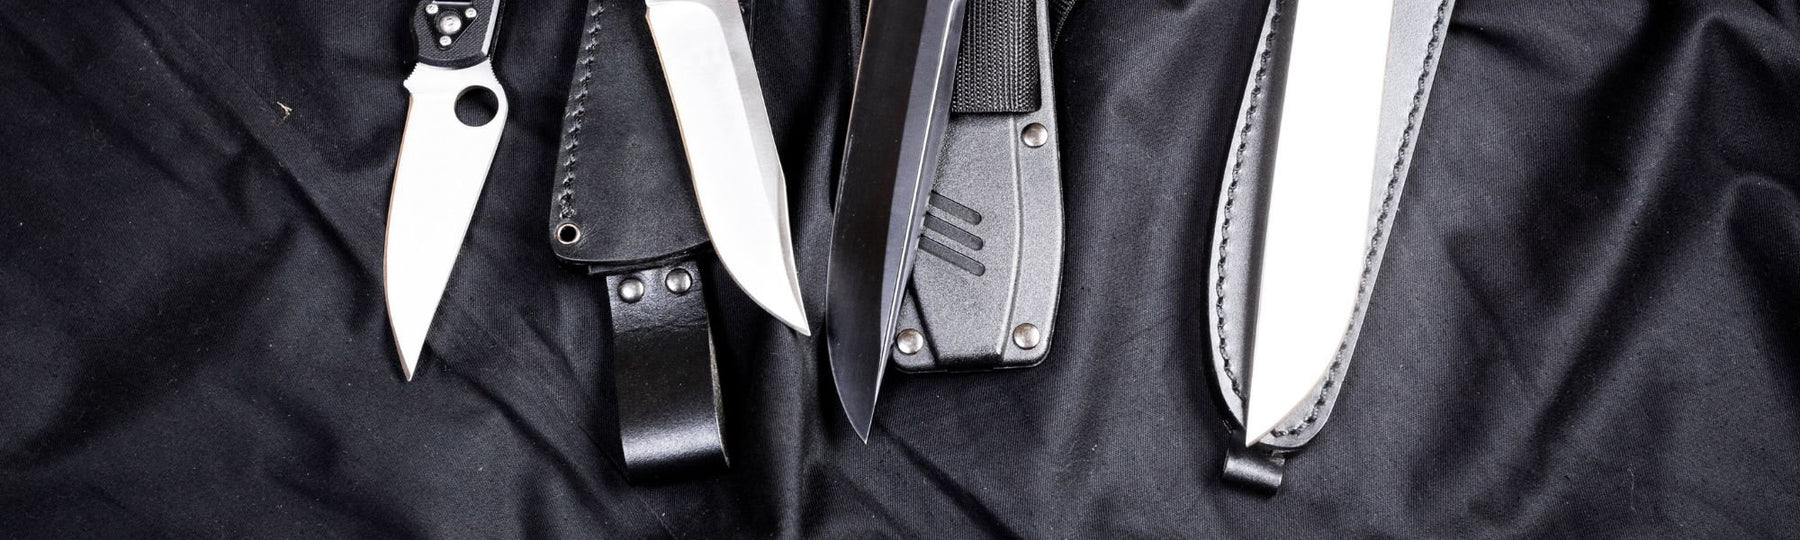 10 types de lames de couteaux à connaître - Welkit